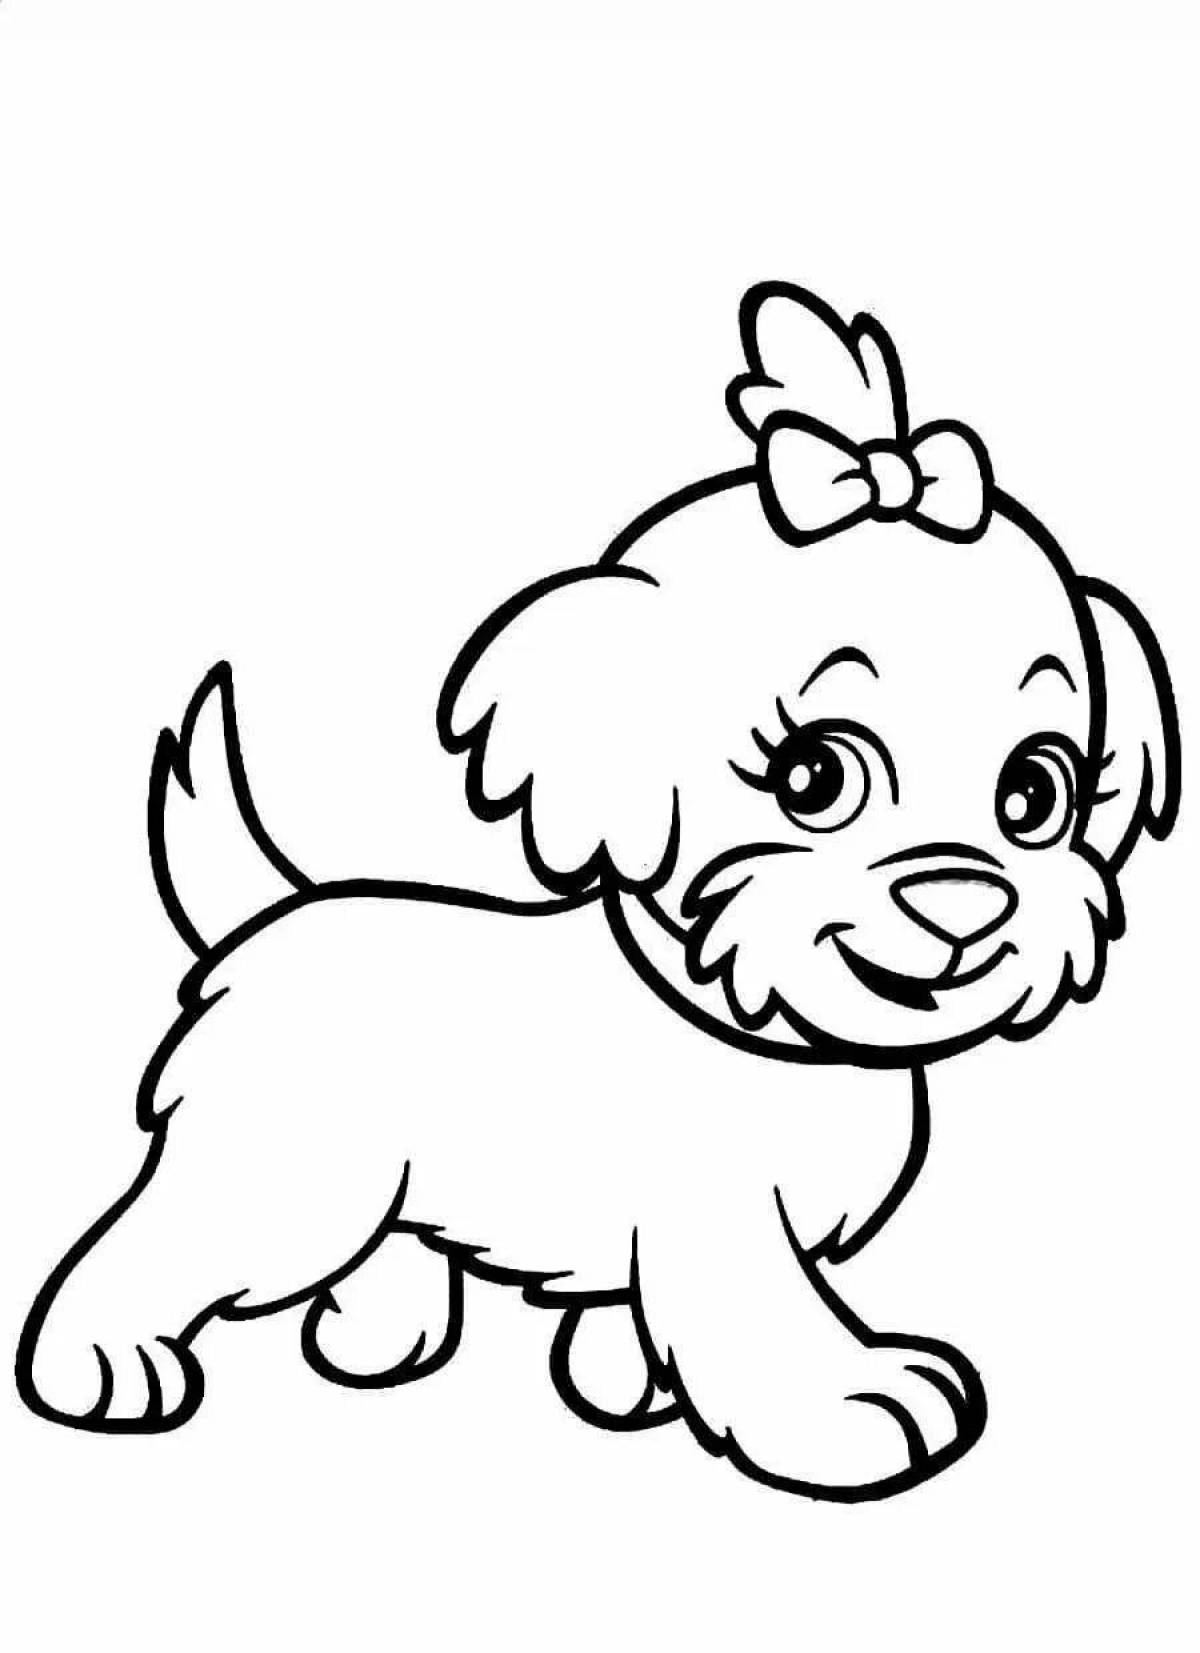 Анимированная раскраска собака для детей 4-5 лет